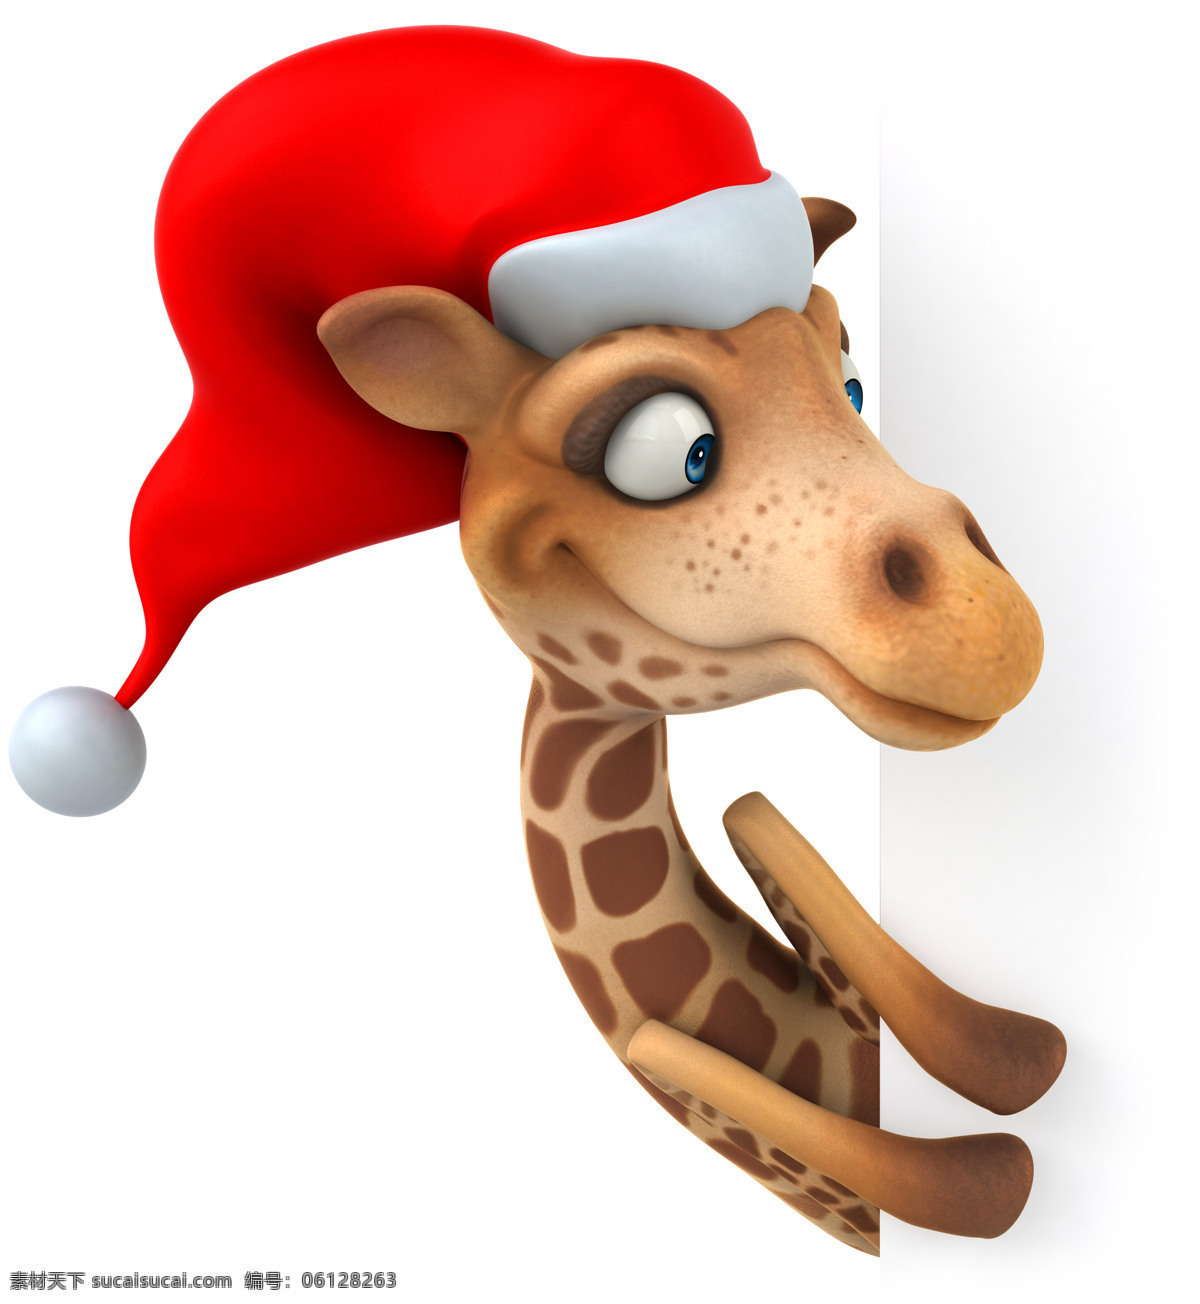 带 圣诞 帽 的卡 通 长颈鹿 卡通长颈鹿 广告牌 圣诞装 圣诞帽 卡通动物 圣诞节素材 生物世界